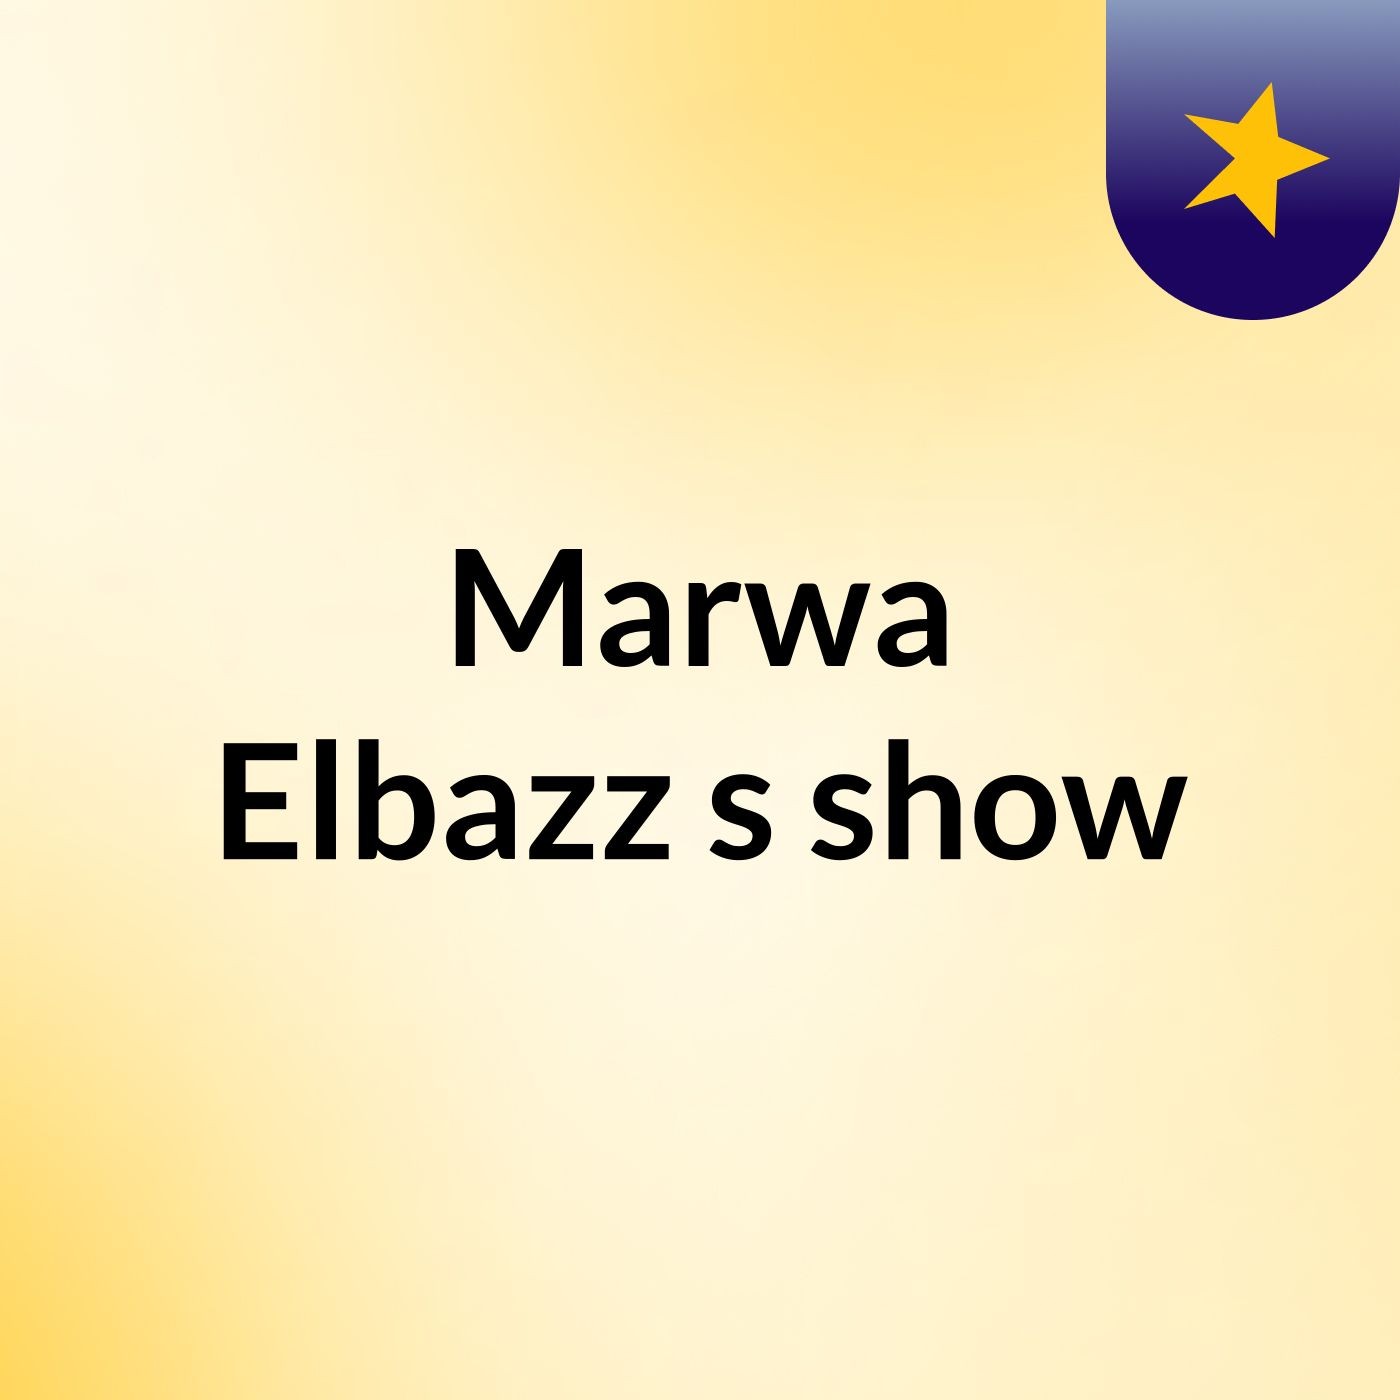 Episode 4 - Marwa Elbazz's show